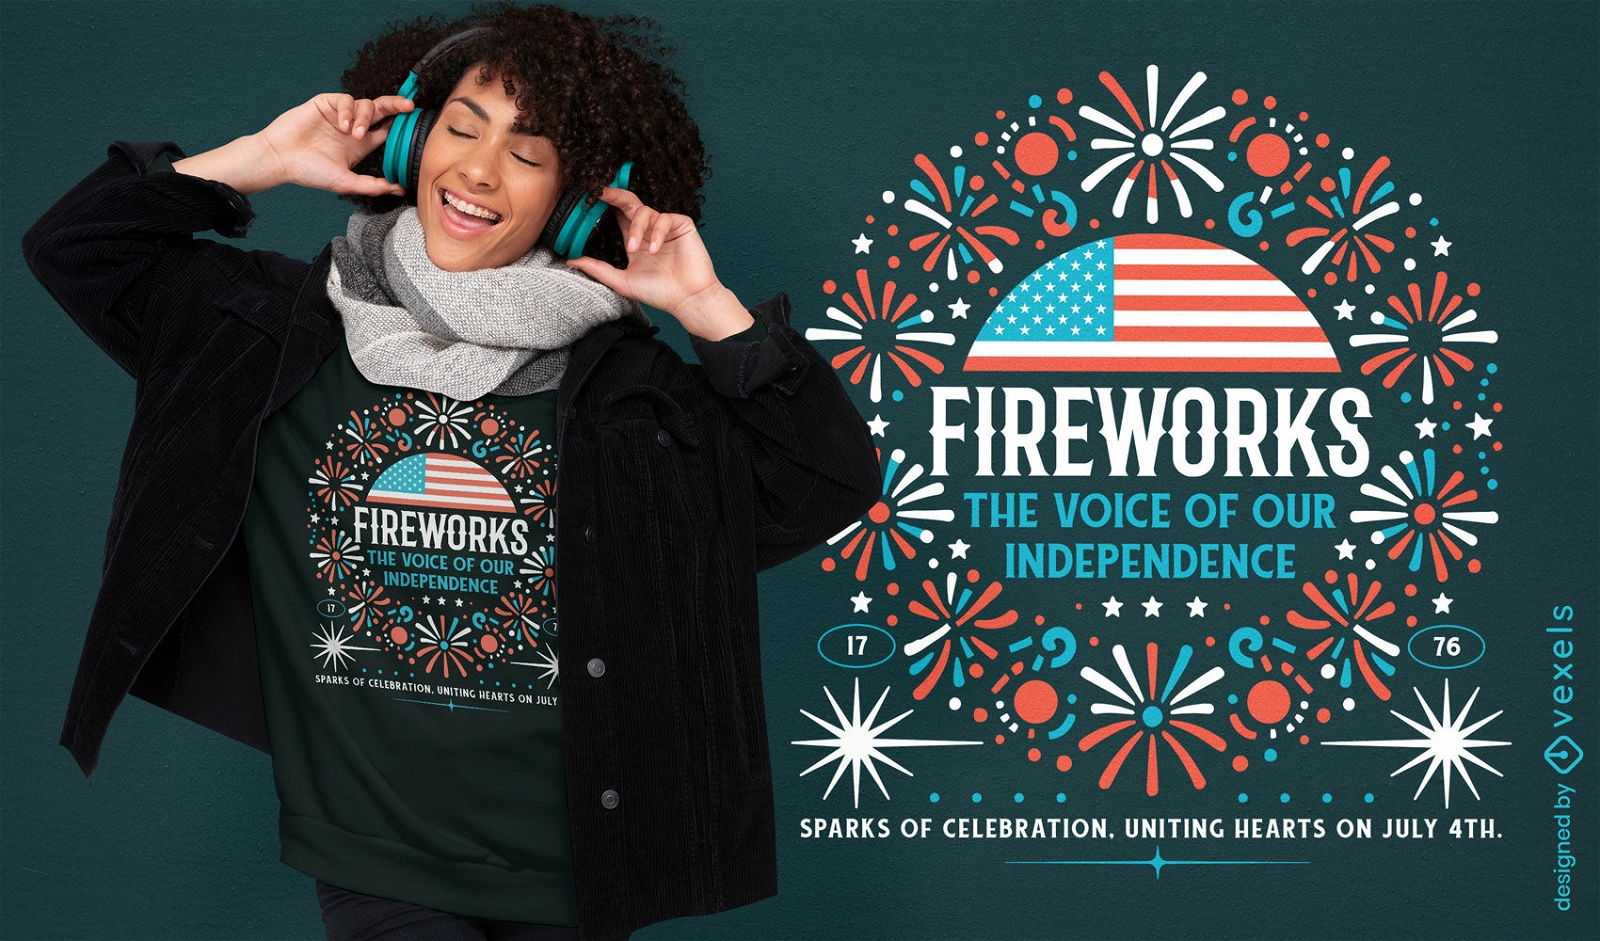 Fireworks independence t-shirt design